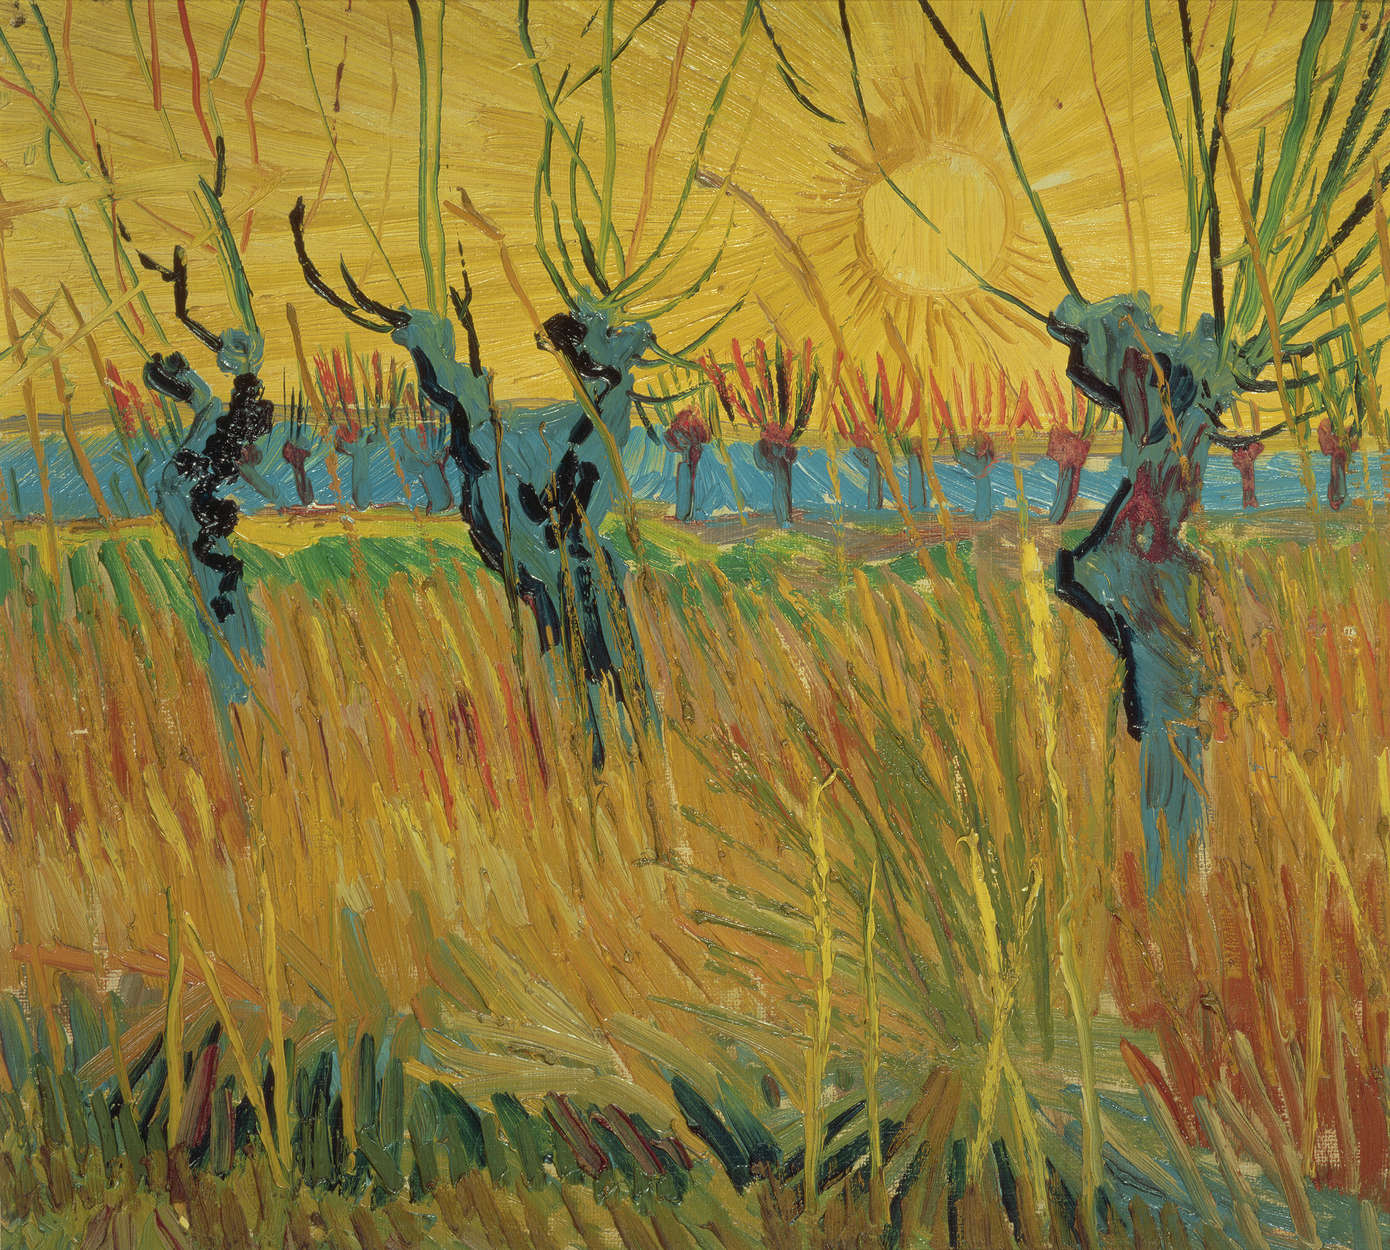             Vincent van Gogh "Wilgen bij zonsondergang" muurschildering
        